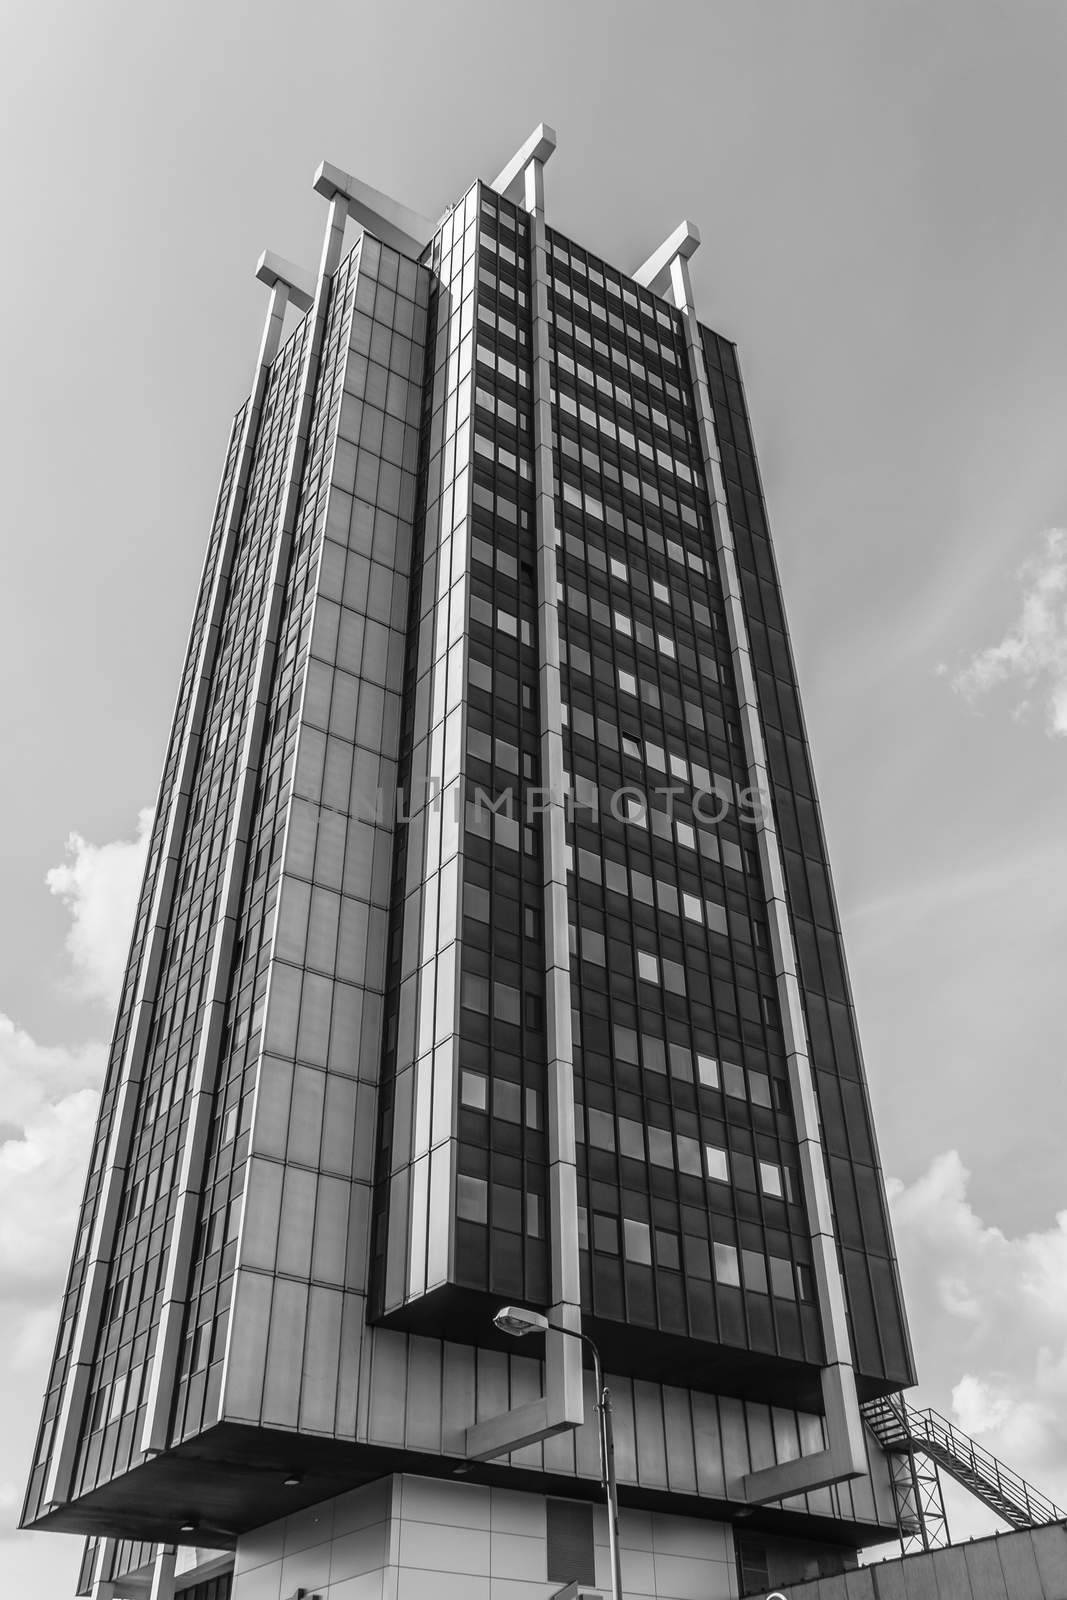 One of two Stalexport skyscrapers by pawel_szczepanski